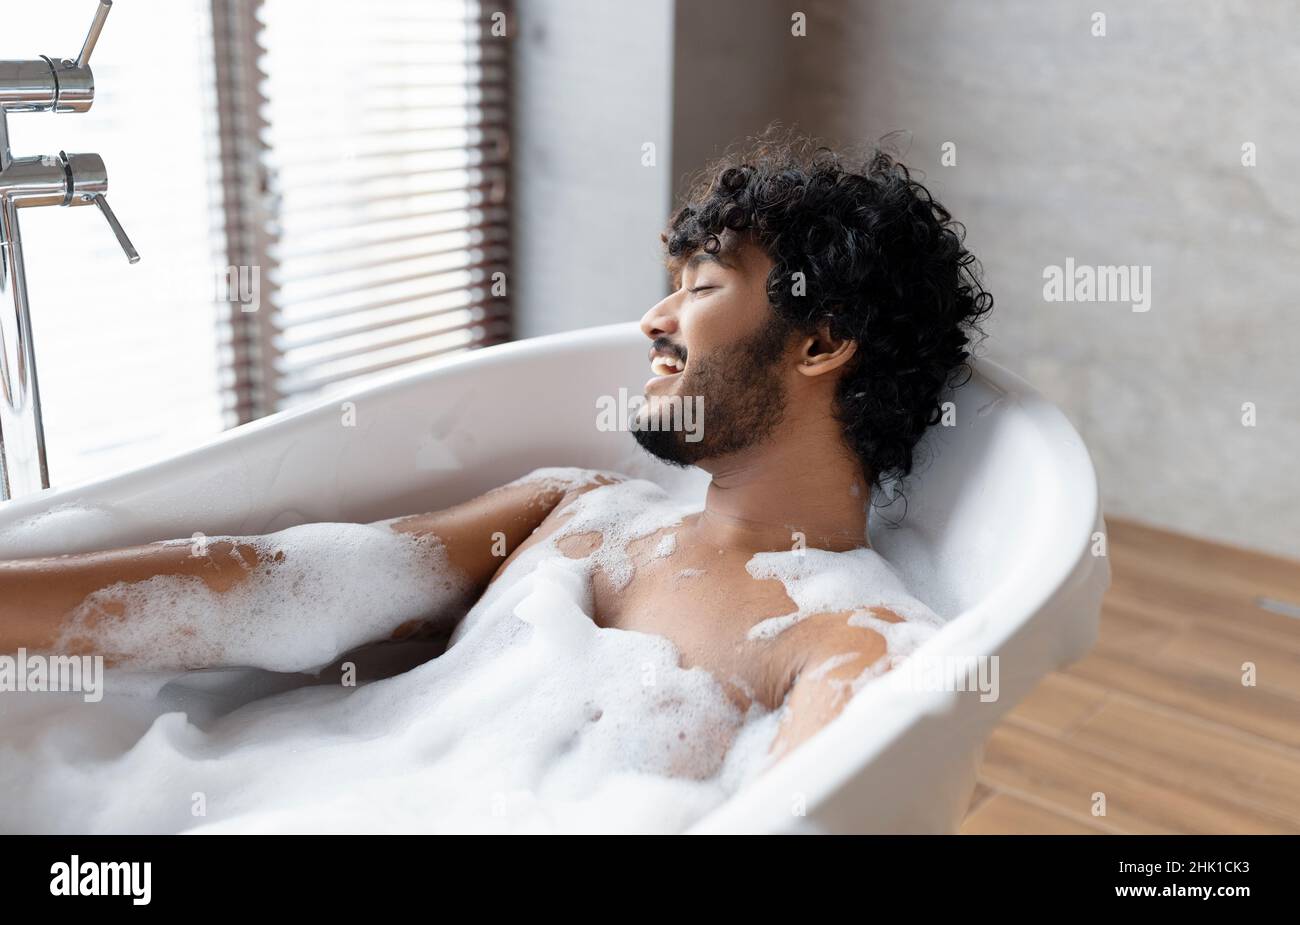 Bagno rilassante. Uomo indiano sdraiato nella vasca da bagno, godendo di schiuma a casa spa, riposo in acqua calda a casa, spazio libero Foto Stock